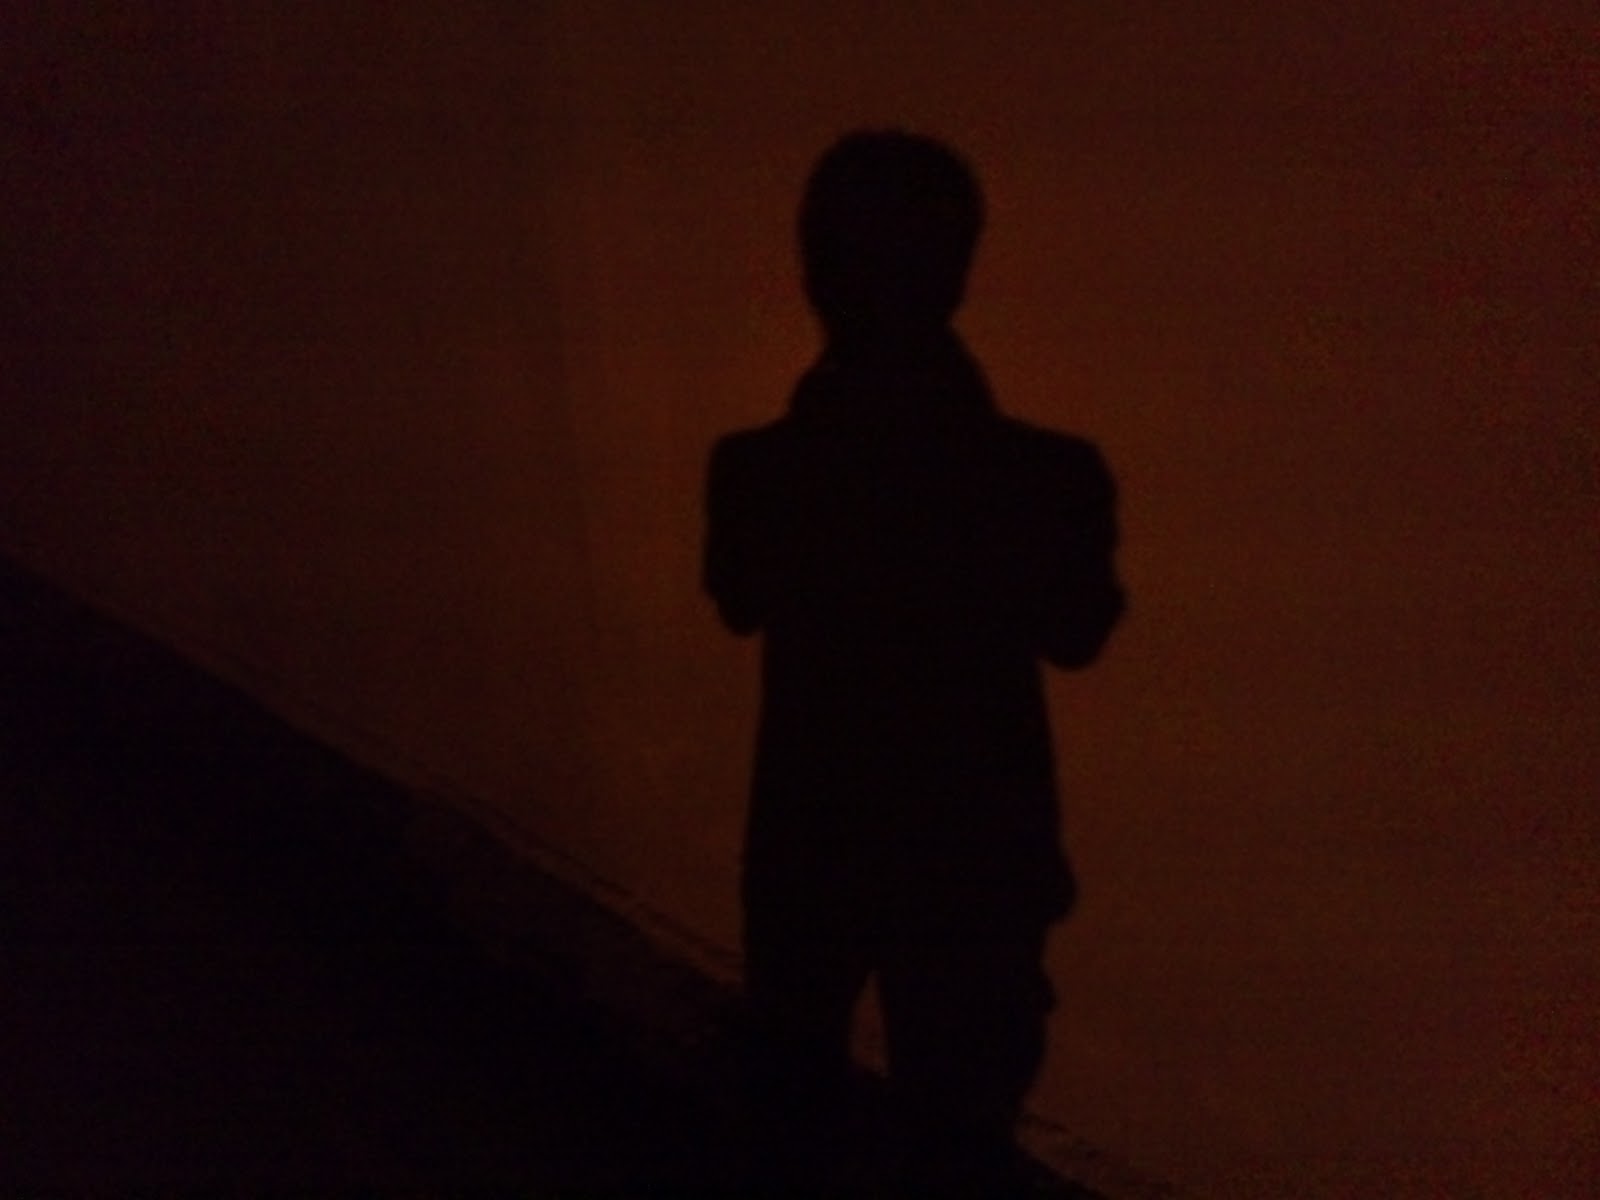 Walking with shadow: The Sad Shadow